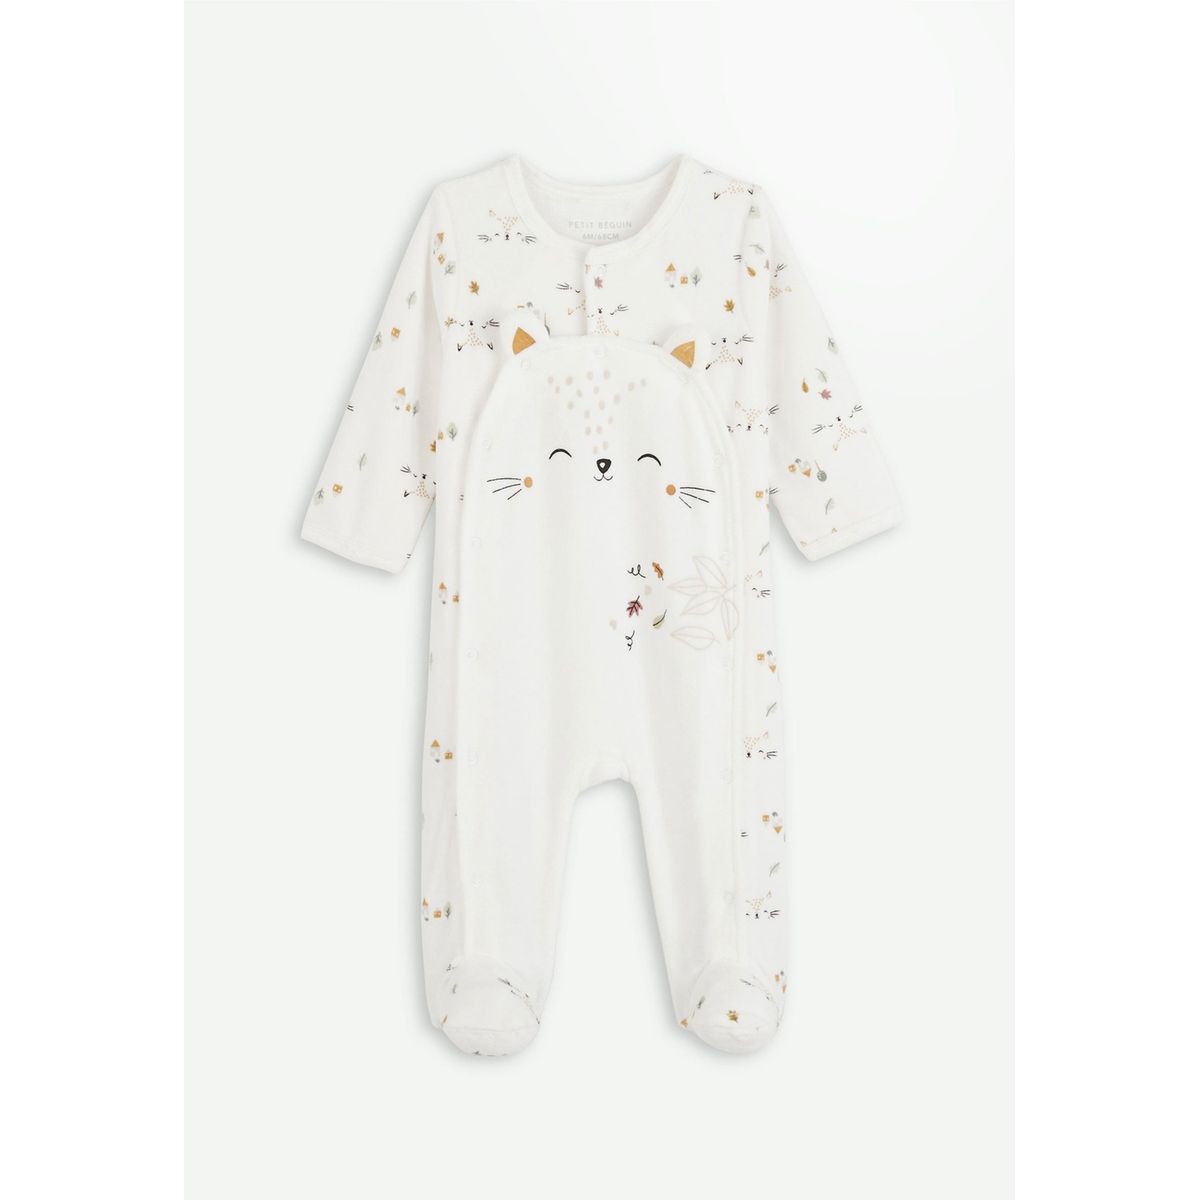 Petit Béguin - Pyjama bébé en Velours Nuage - Taille - 1 Mois